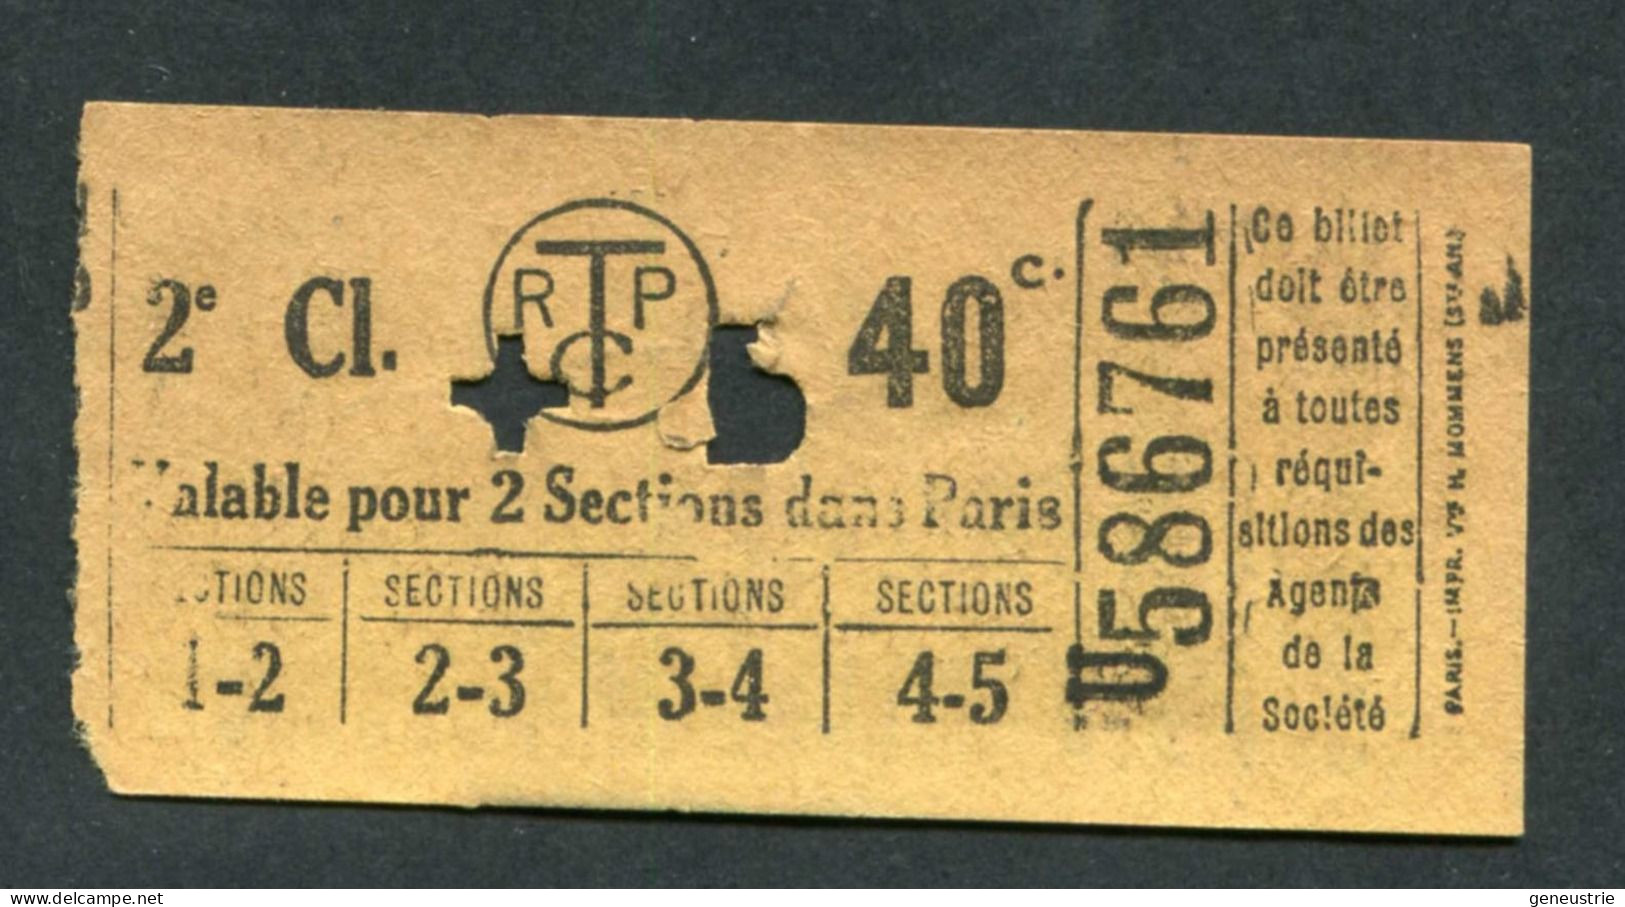 Ticket De Tramways Parisiens 1922-1924 (STCRP) 2e Classe 40c + 5c - Paris" Chemin De Fer - Tramway - Tram - Europa